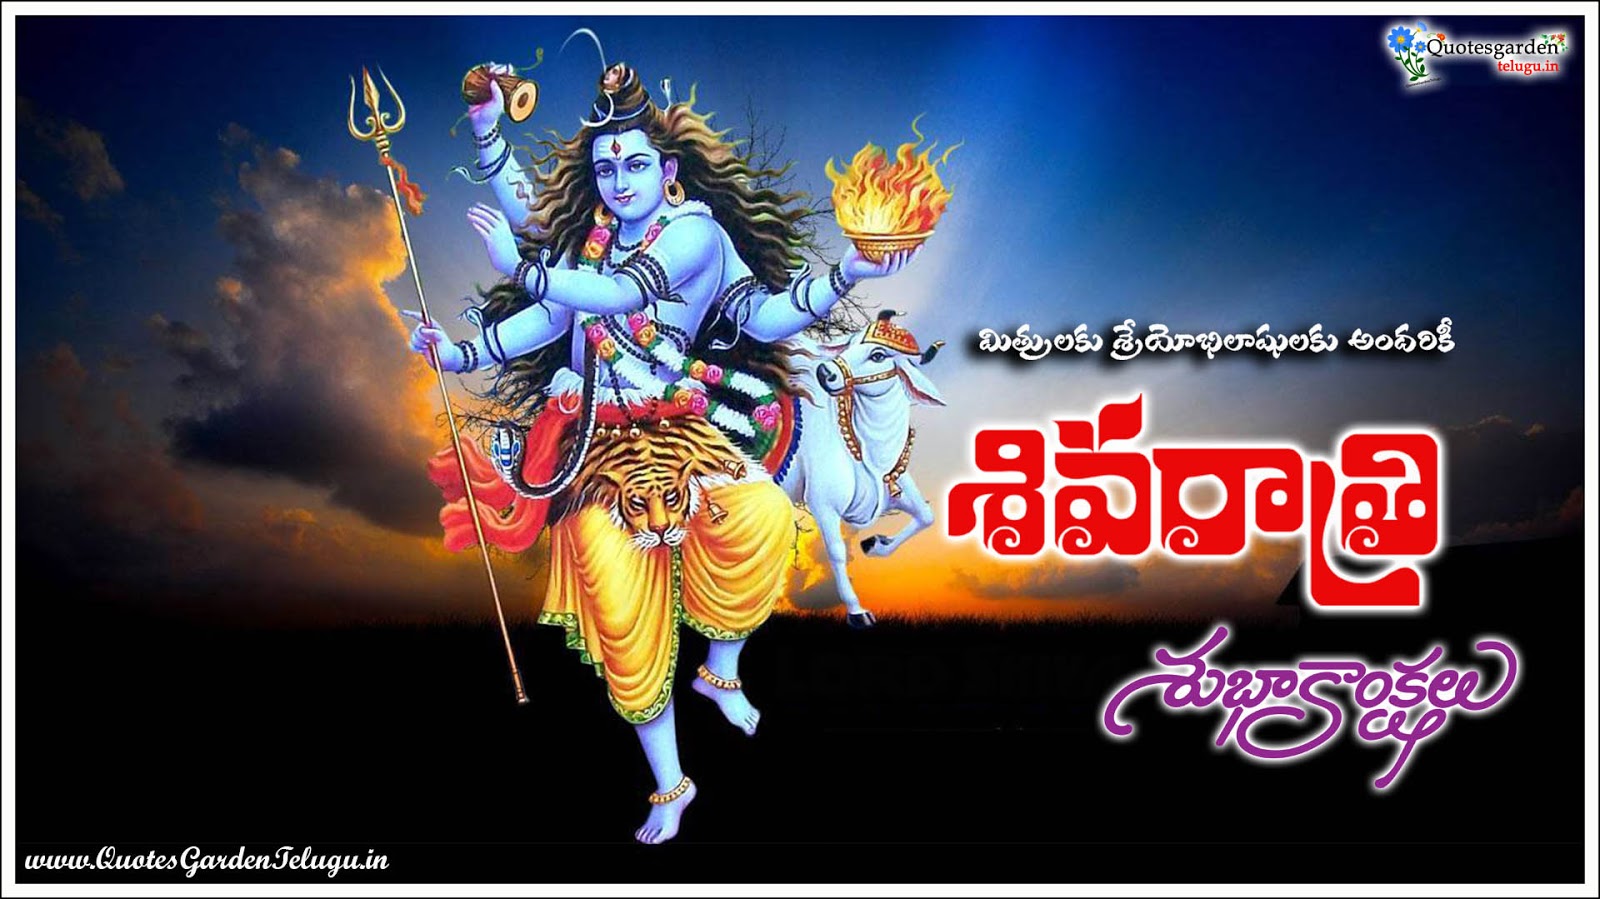 Latest Maha Shivaratri Telugu wishes messages | QUOTES GARDEN ...